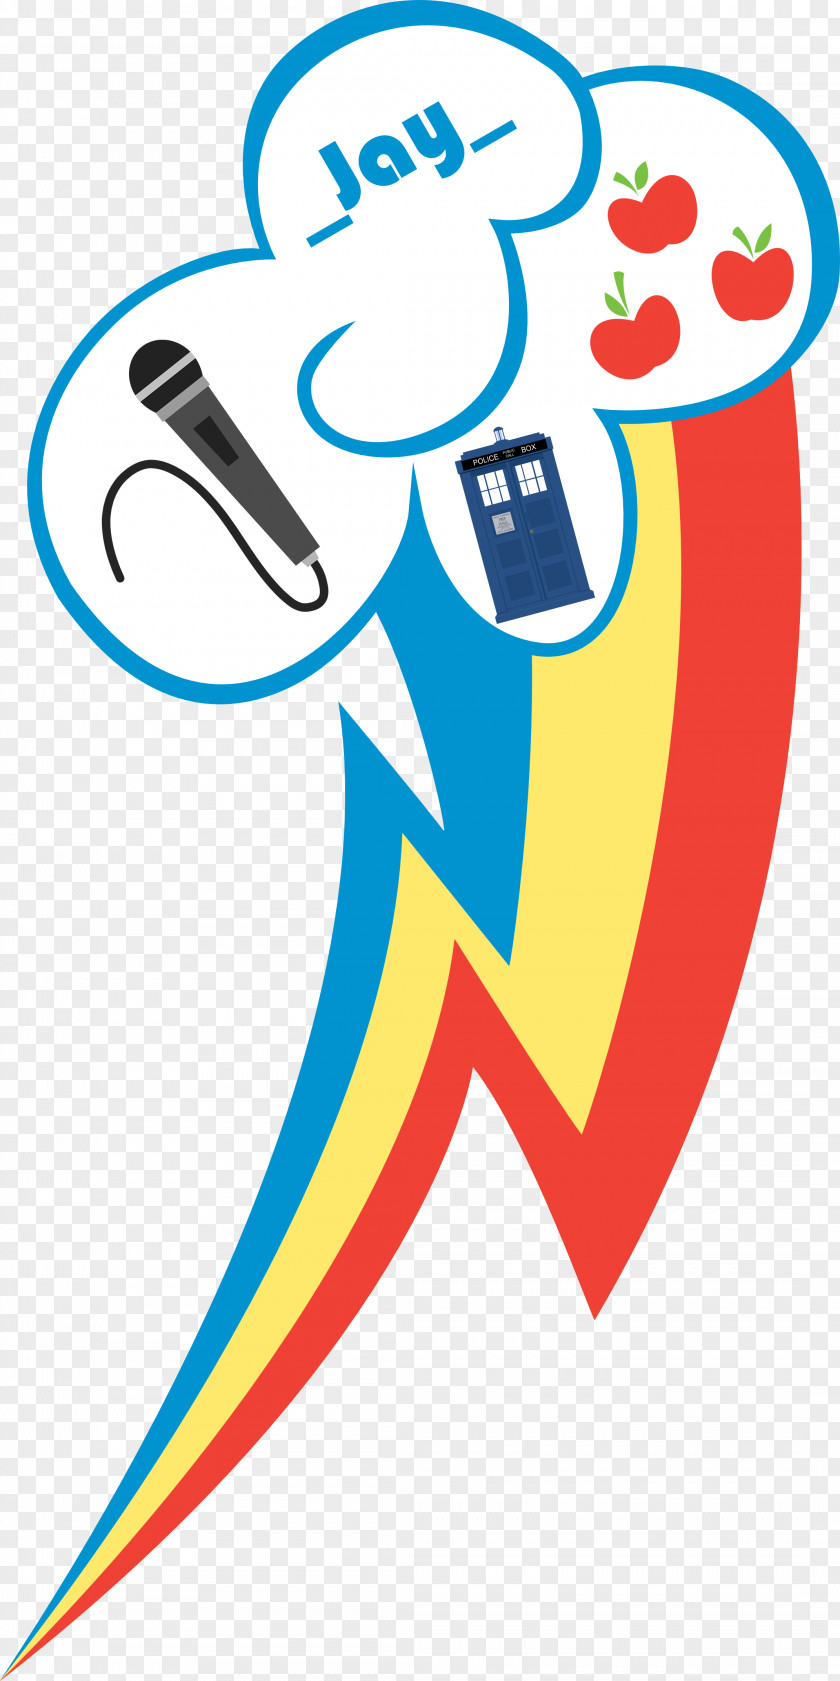 Tøp New Logo Rainbow Dash Rarity Pinkie Pie Pony Applejack PNG